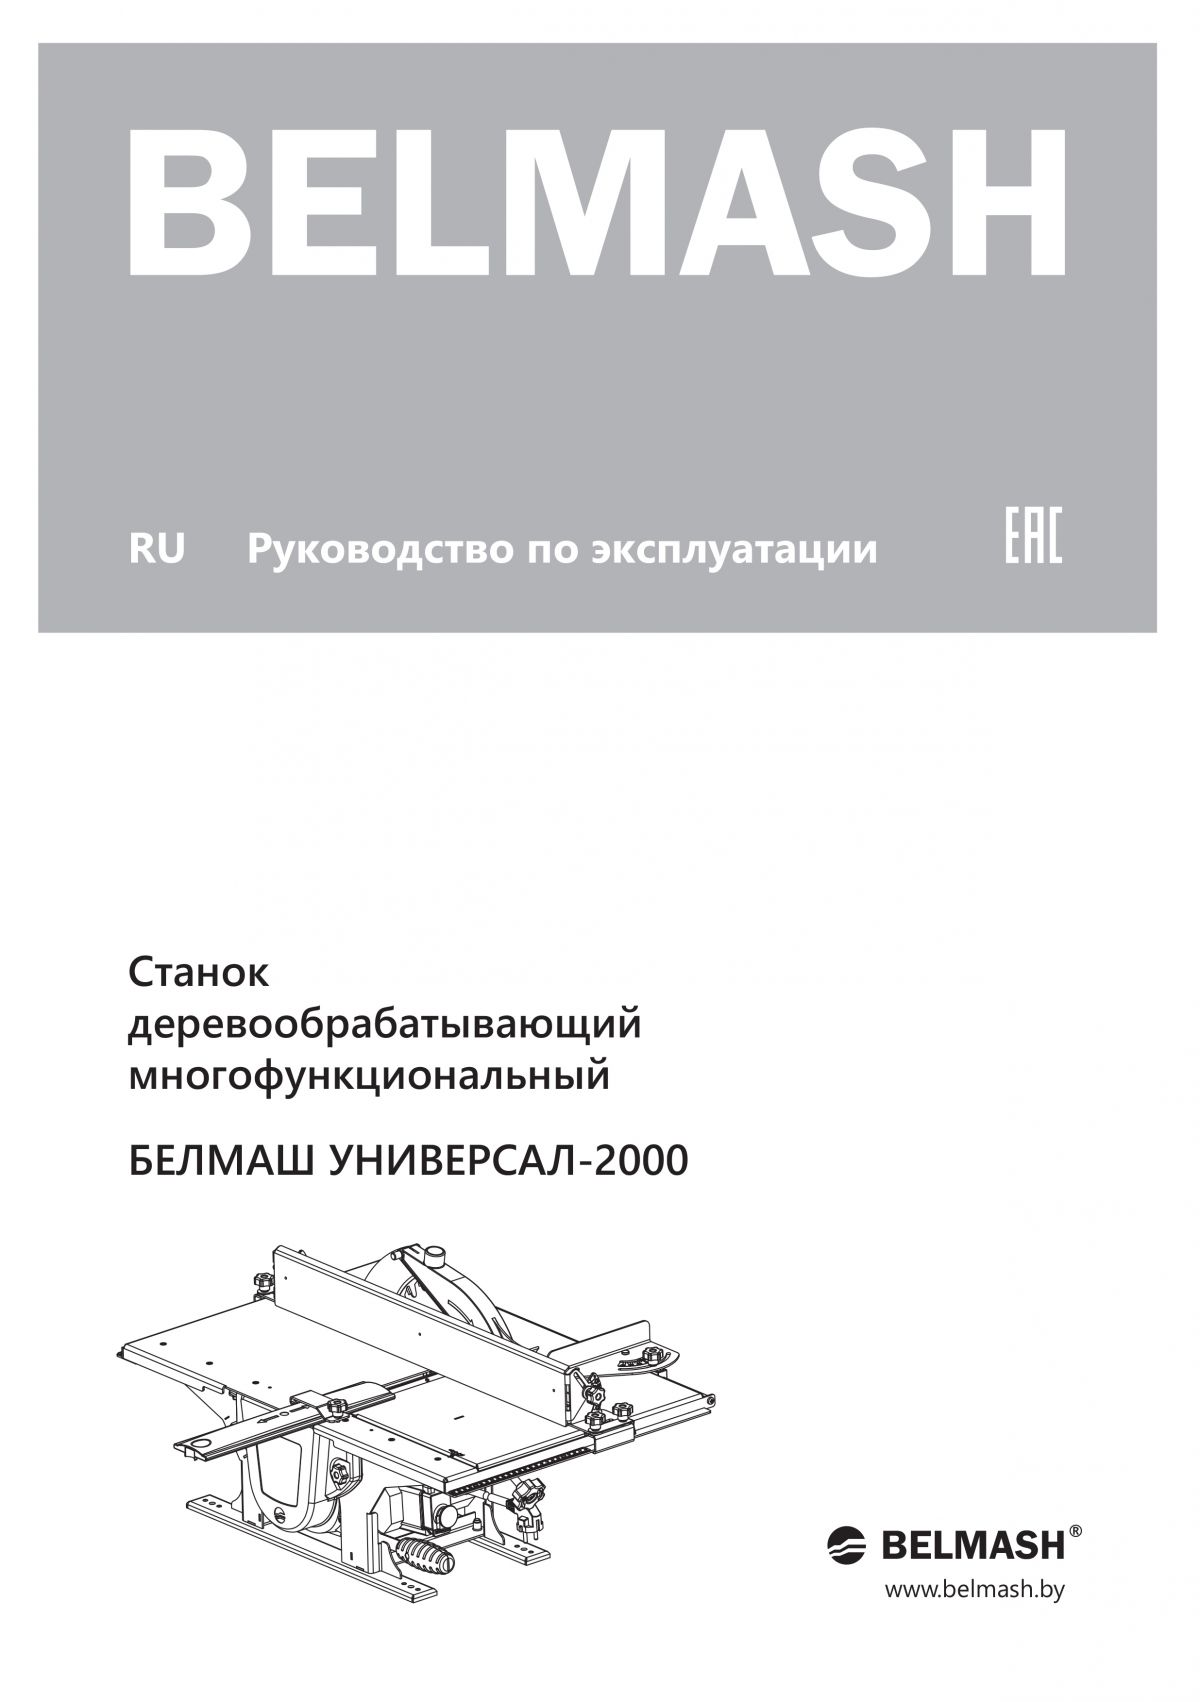 Руководство по эксплуатации для станка UNIVERSAL-2000ВМ (русский язык)